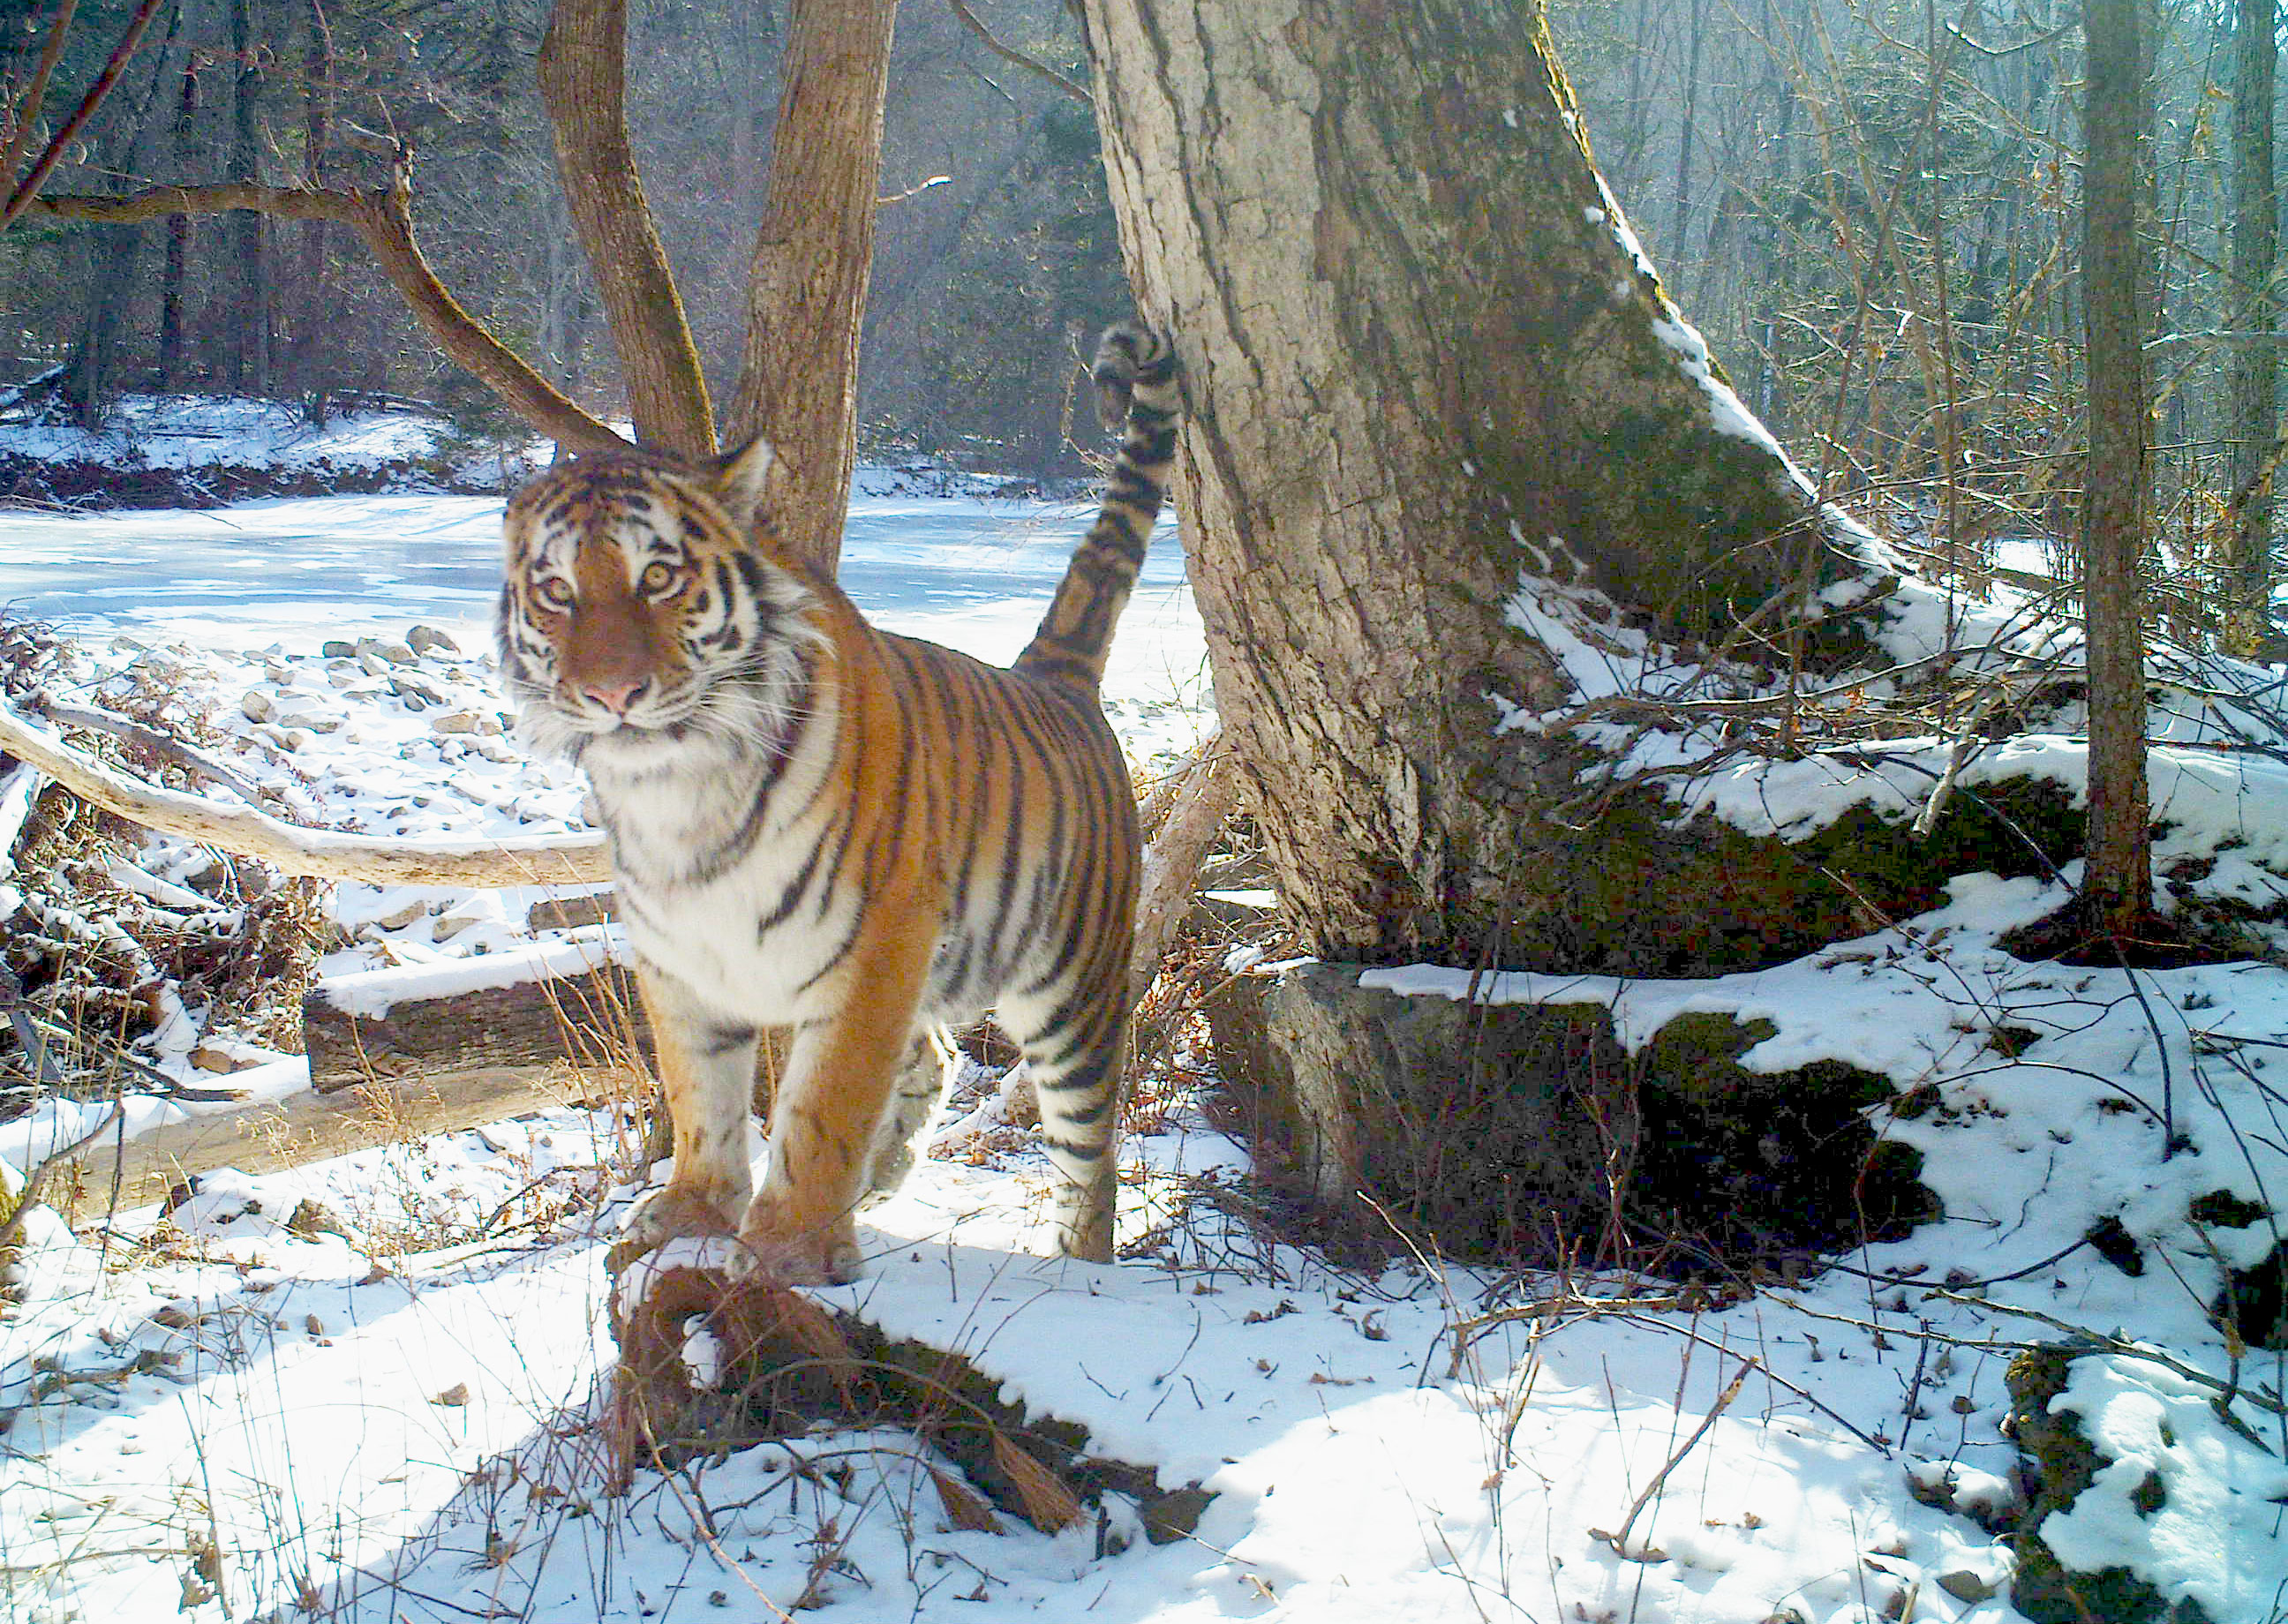 Wild Amur tiger in snowy landscape